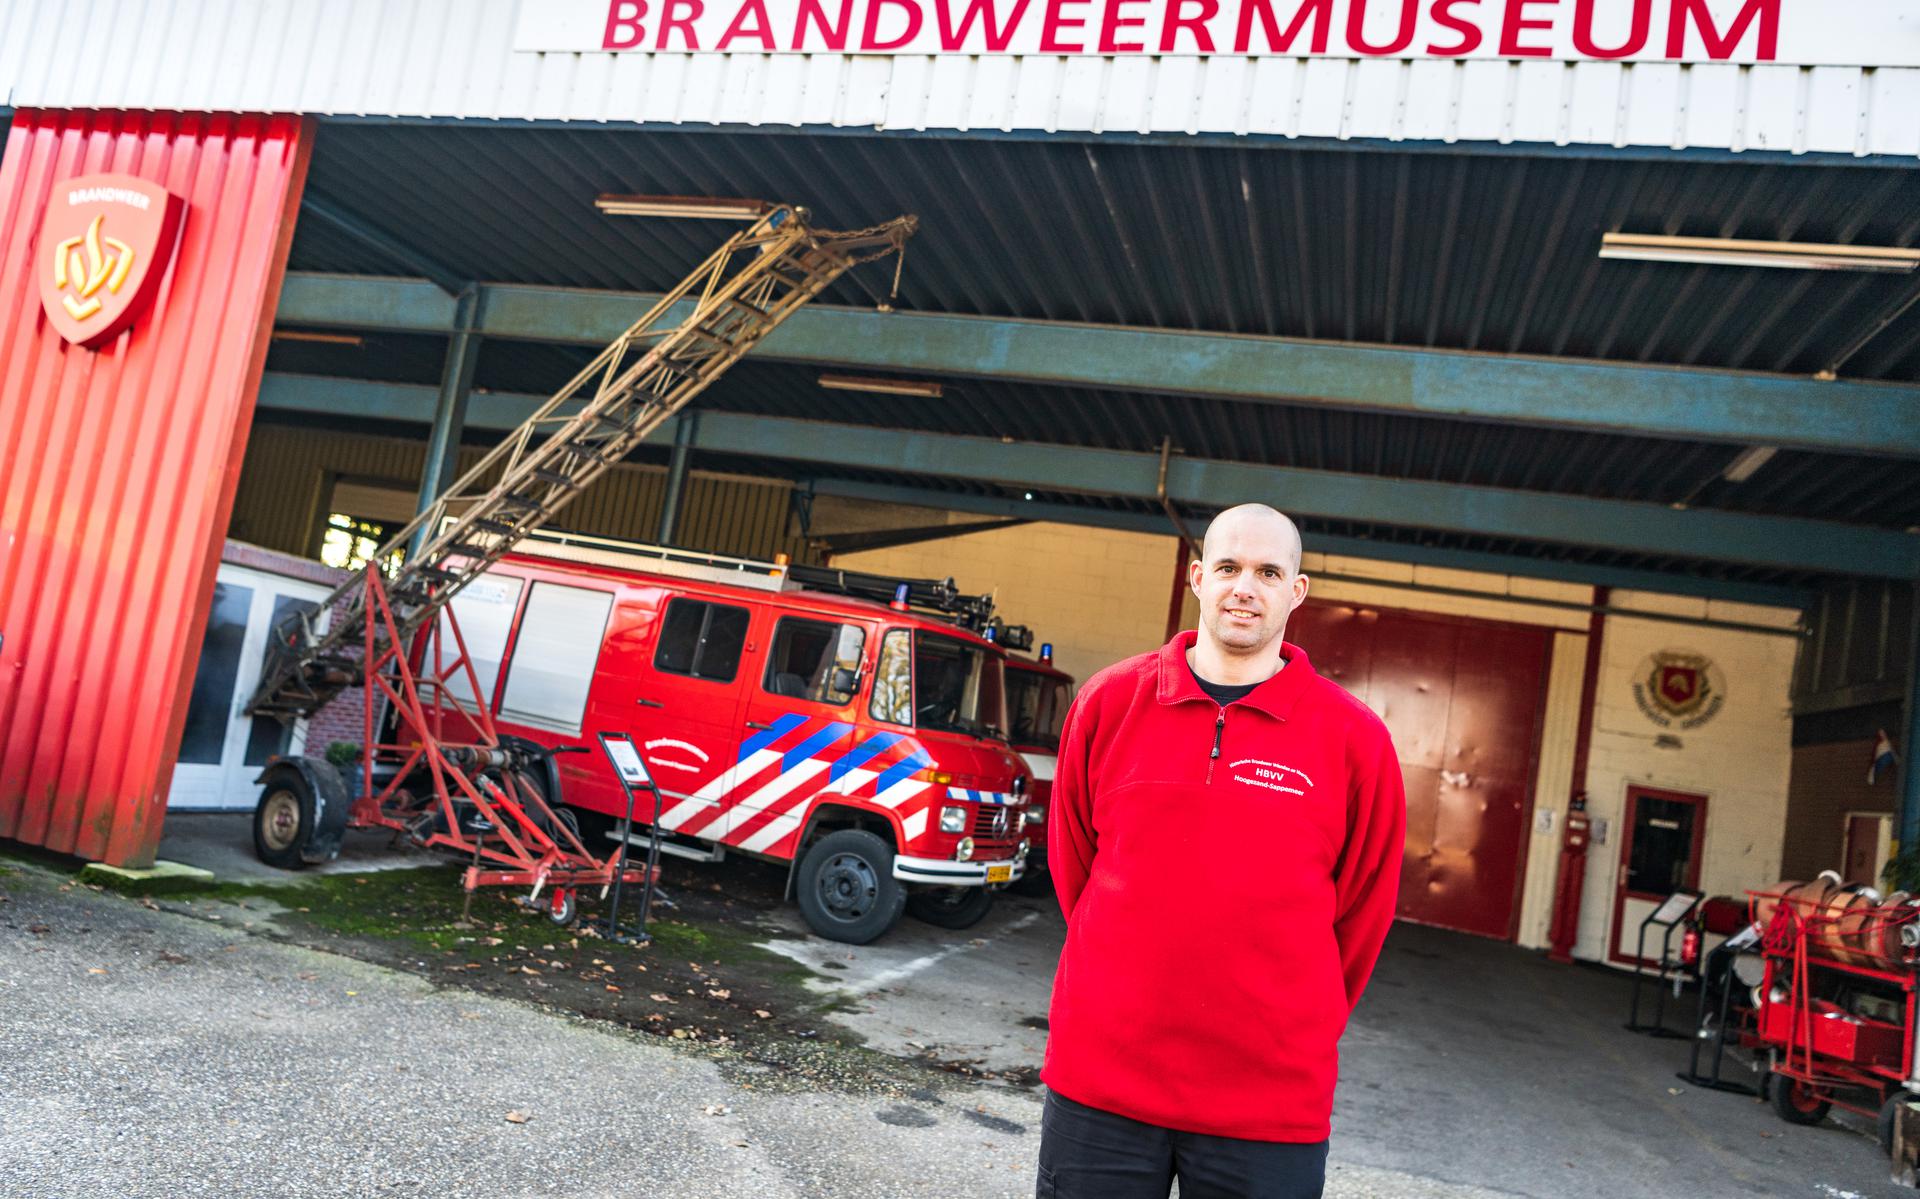 Marc Bakker bij het brandweermuseum